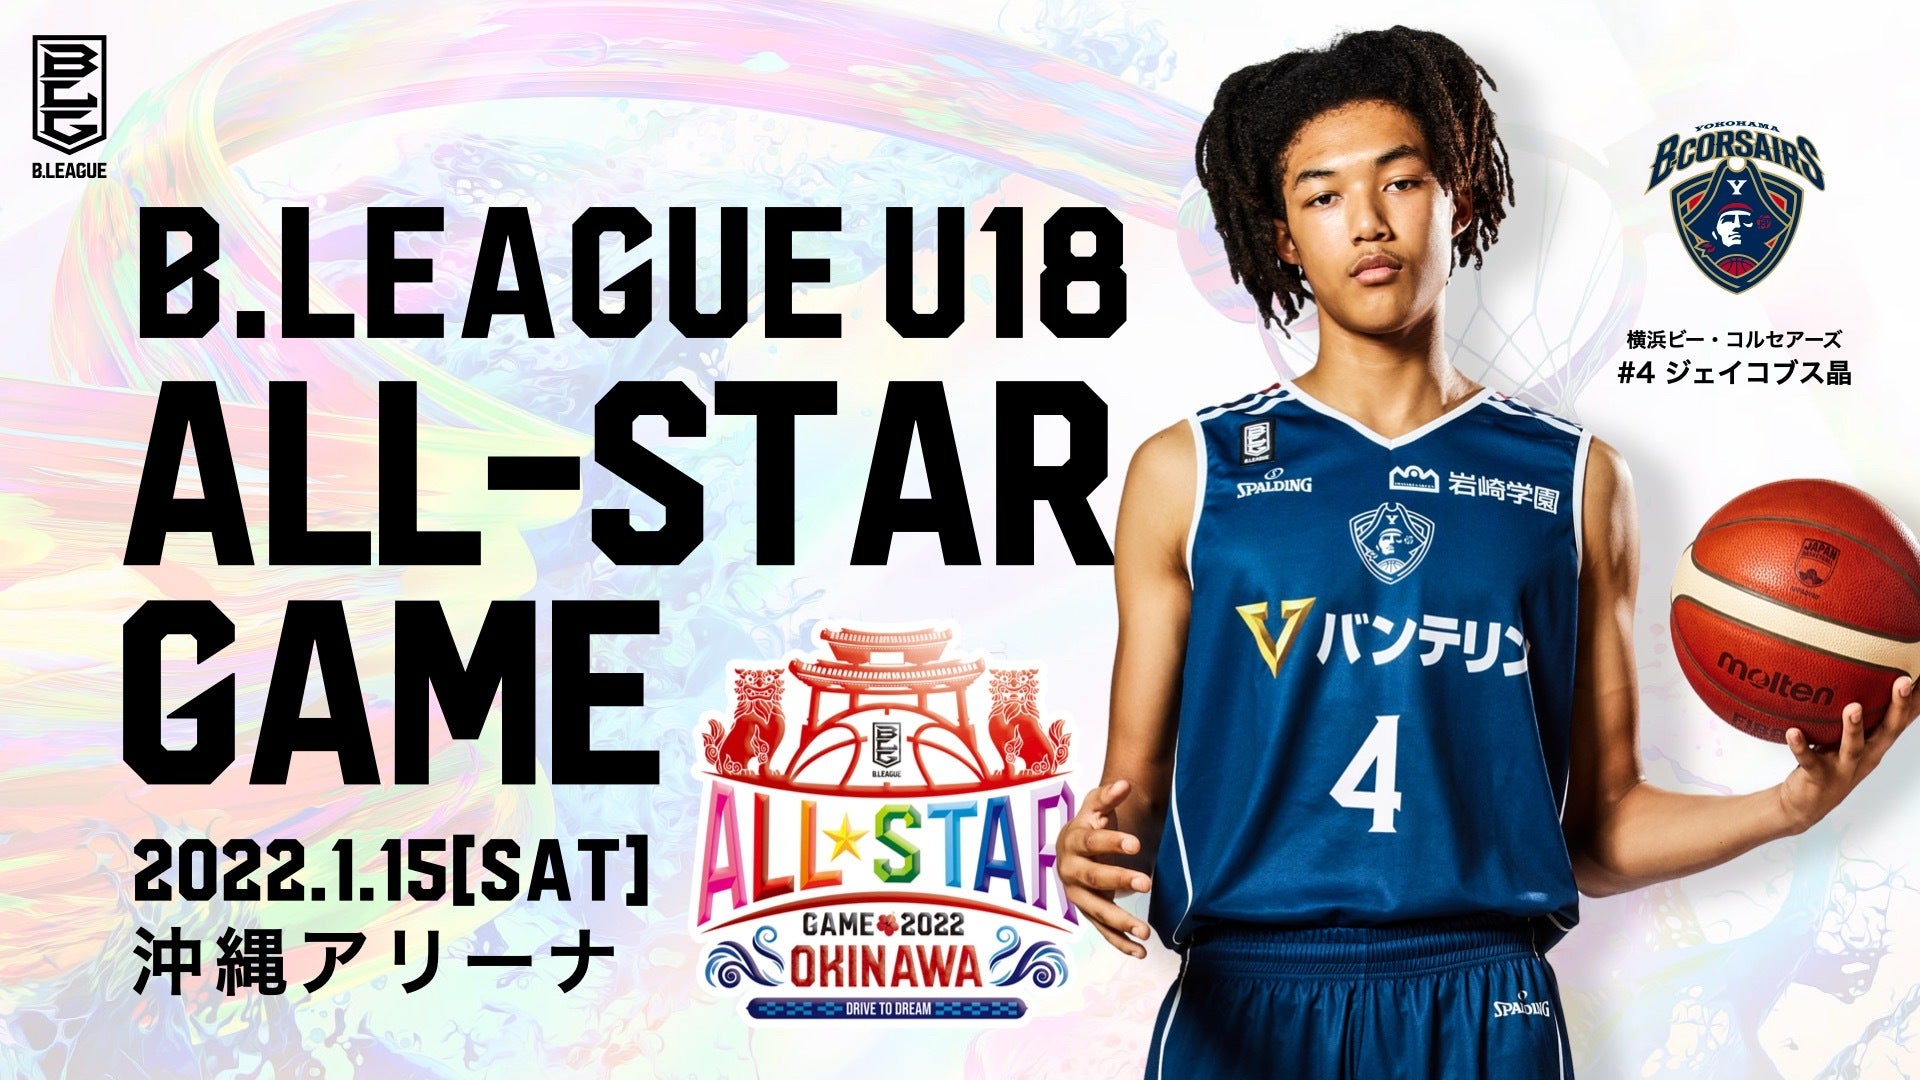 ジェイコブス選手 B.LEAGUE U18 ALL-STAR GAME出場